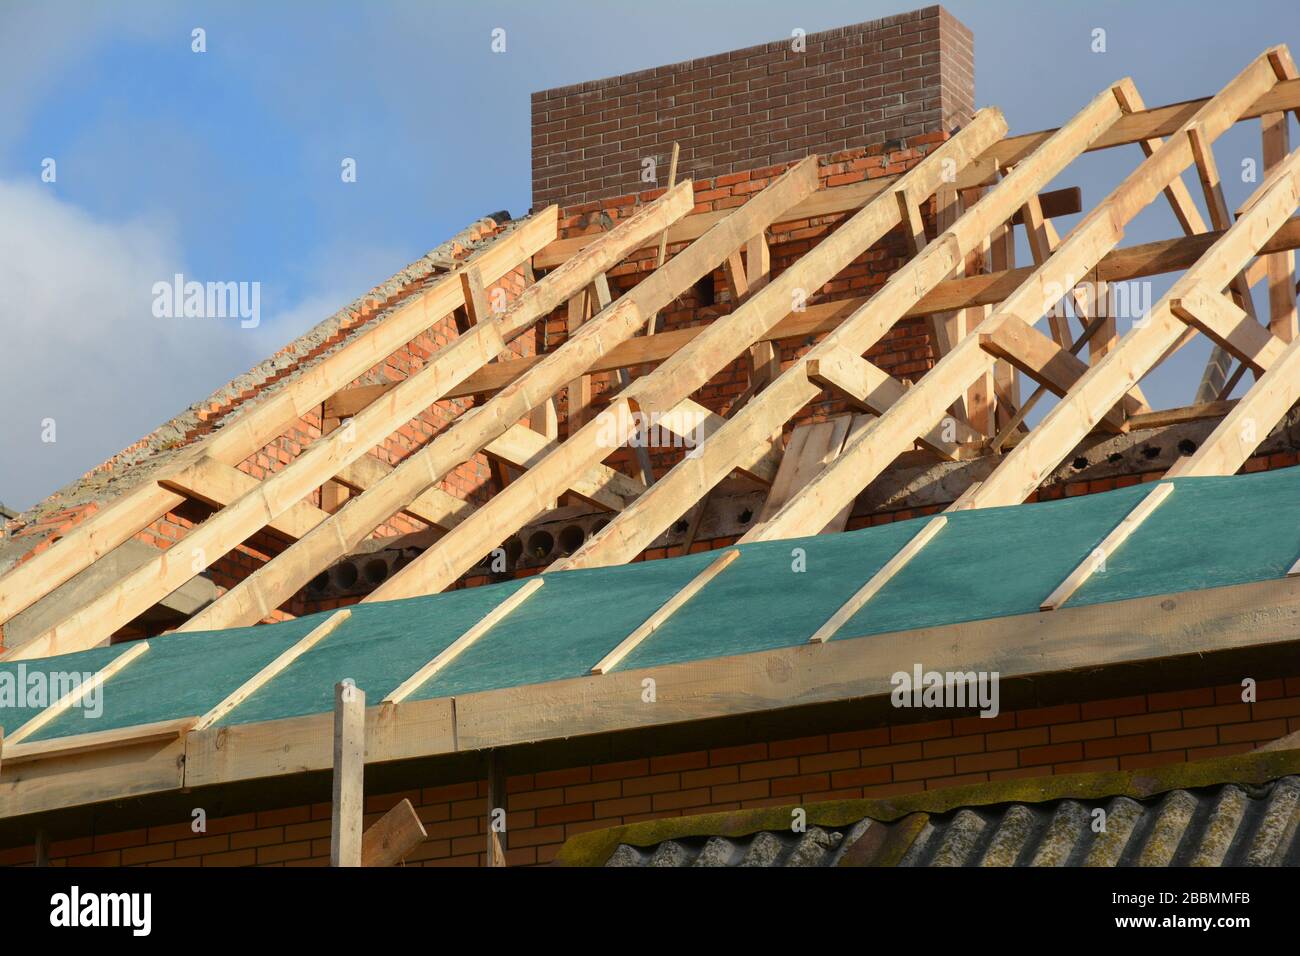 Costruzione di una struttura in legno sul tetto della casa. Costruzione di tetti incompleta casa tralicci tetto, barriera al vapore, travi in legno, eaves, legname. Foto Stock